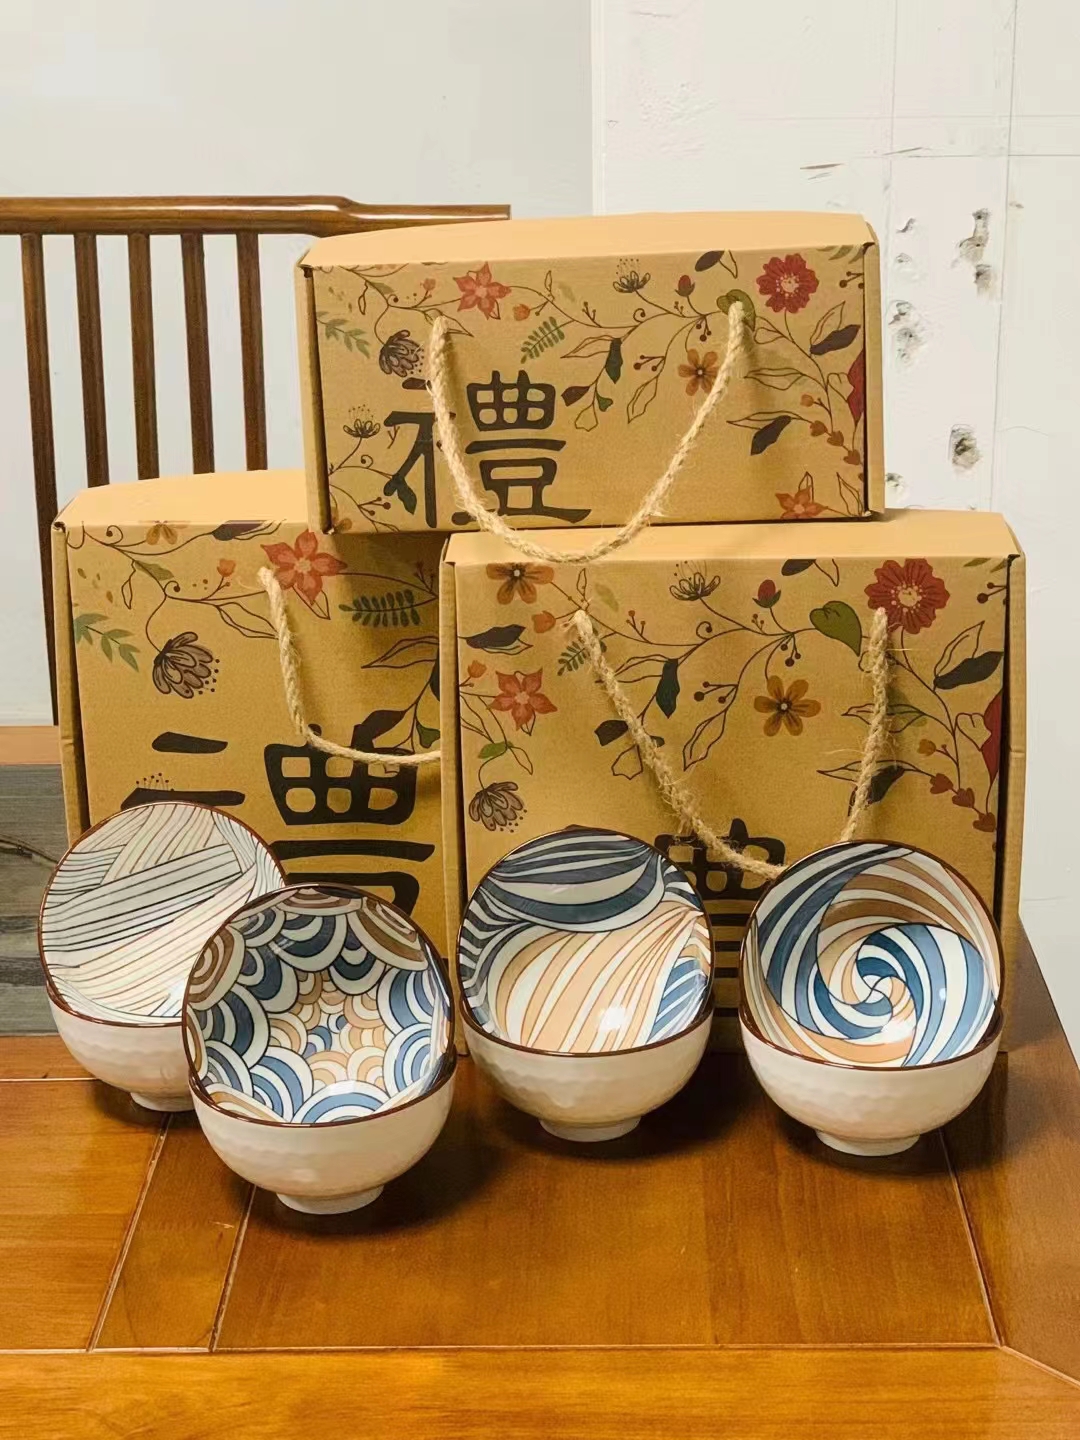 日式餐具日式碗陶瓷碗创意礼品陶瓷餐具礼品碗陶瓷碗盘中式餐具西式餐具详情133